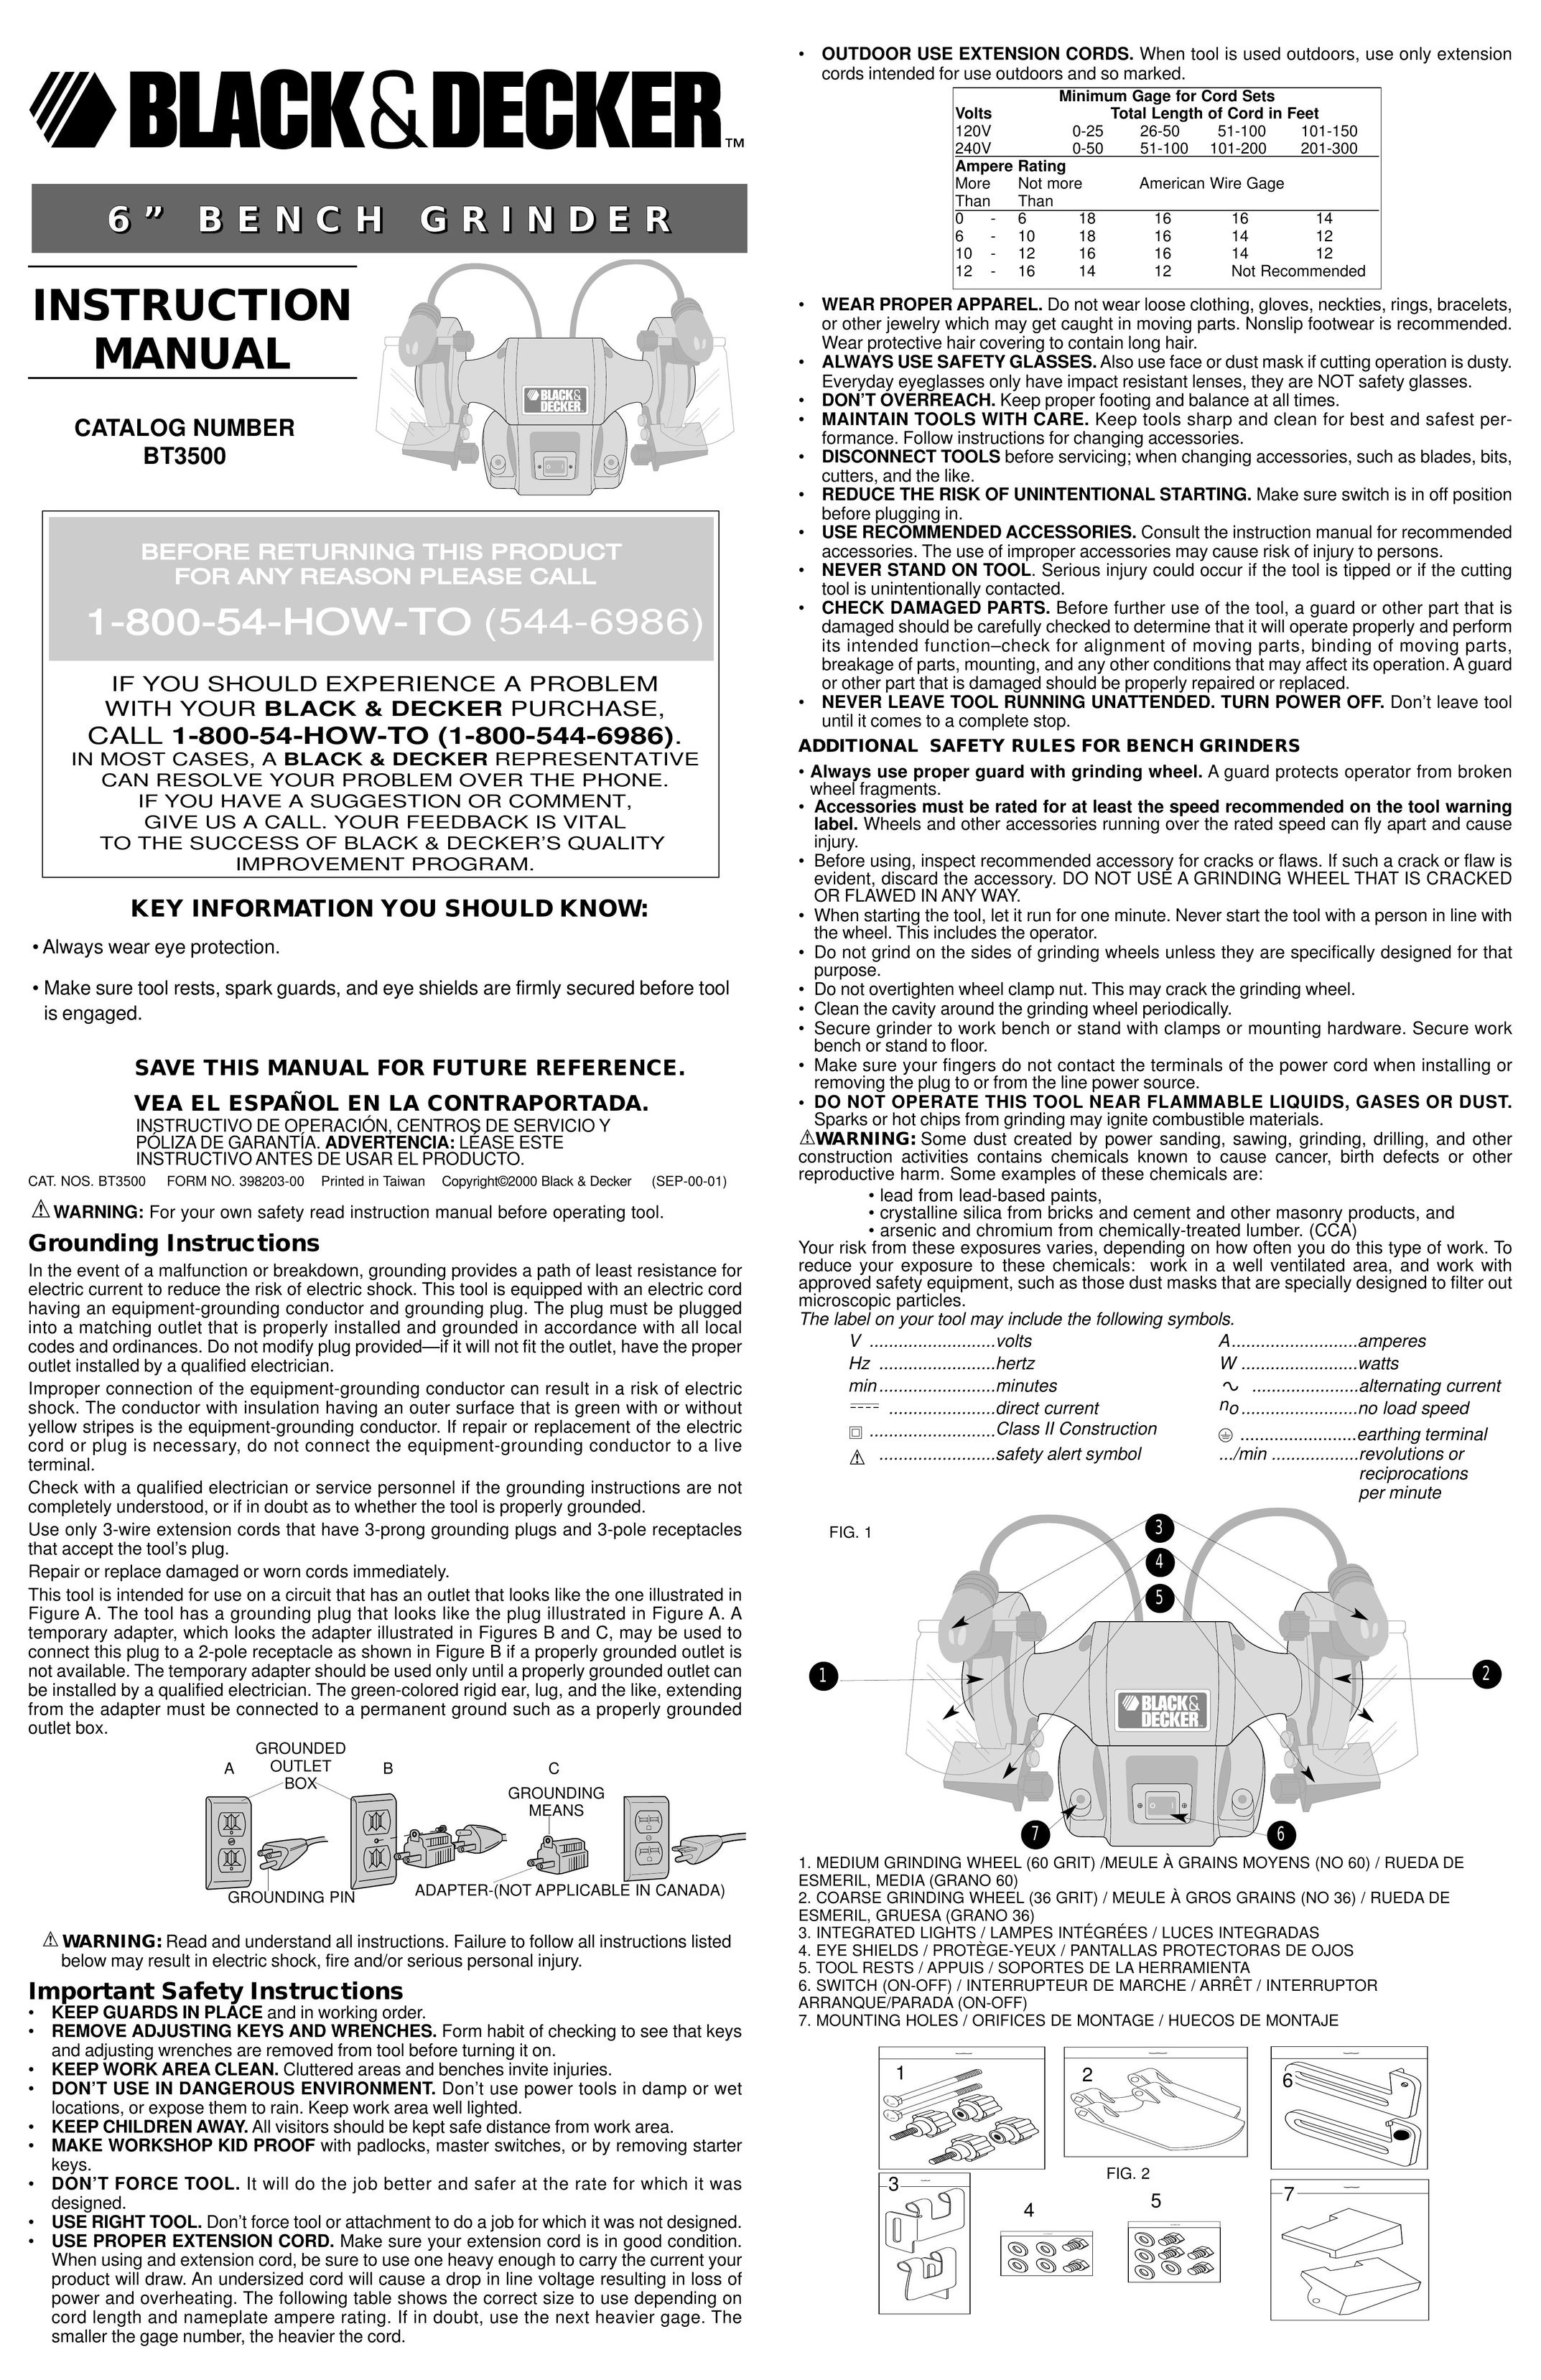 Black & Decker 398203-00 Grinder User Manual